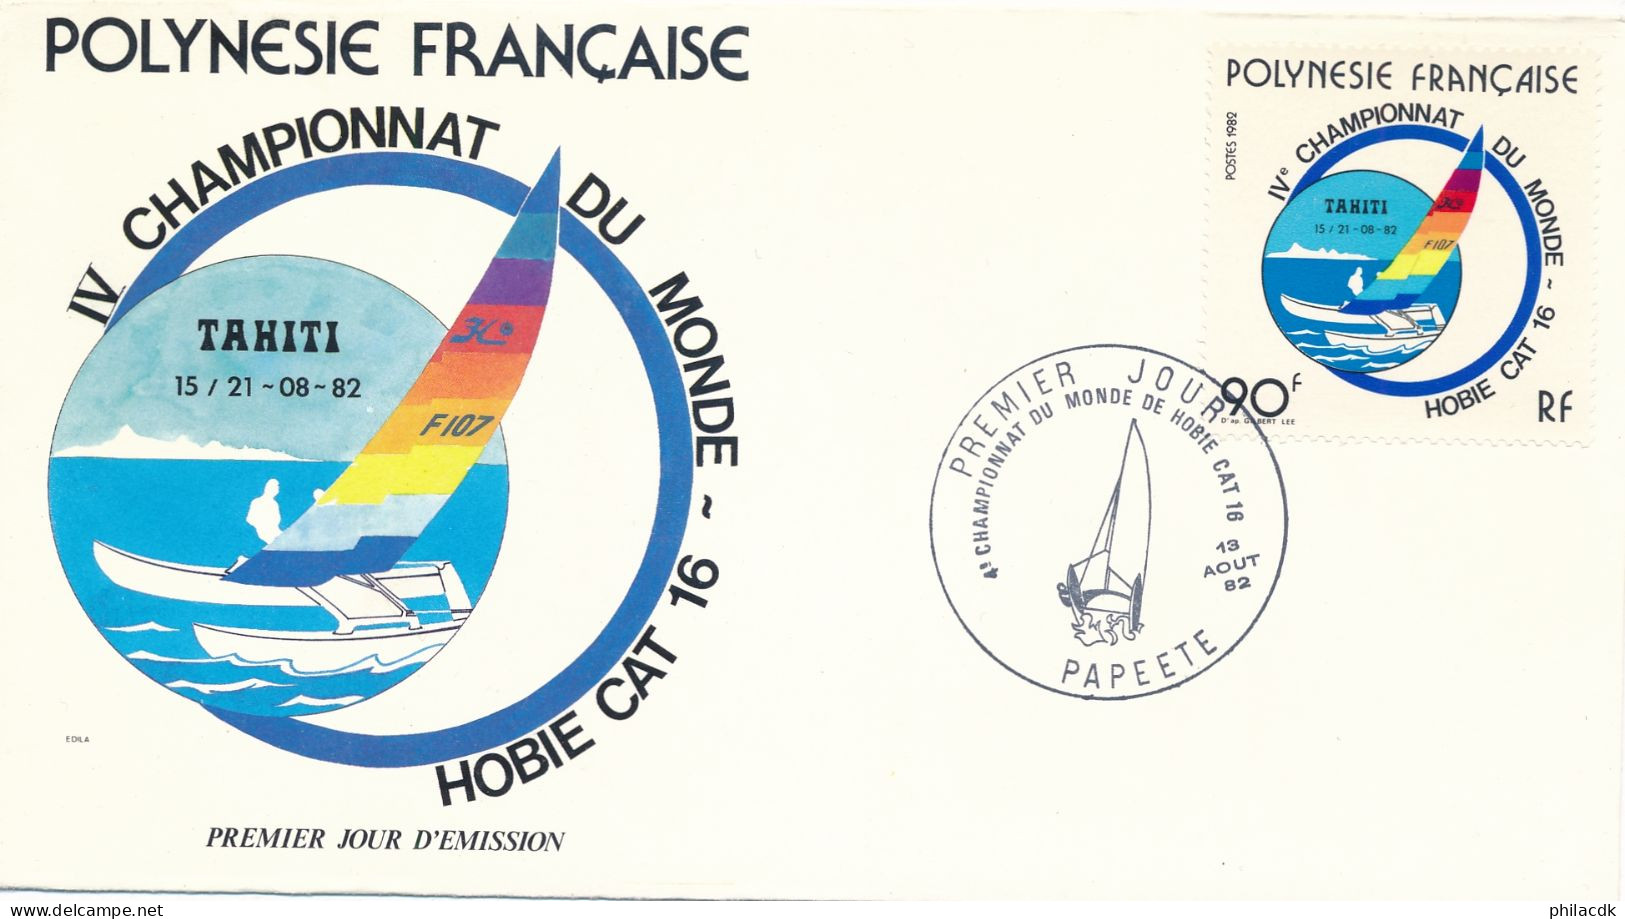 POLYNESIE FRANCAISE - ENVELOPPE PREMIER JOUR  DU 13 AOUT 1982 4EME CHAMPIONNAT DU MONDE DE HOBBIE CAT 16 - Vela